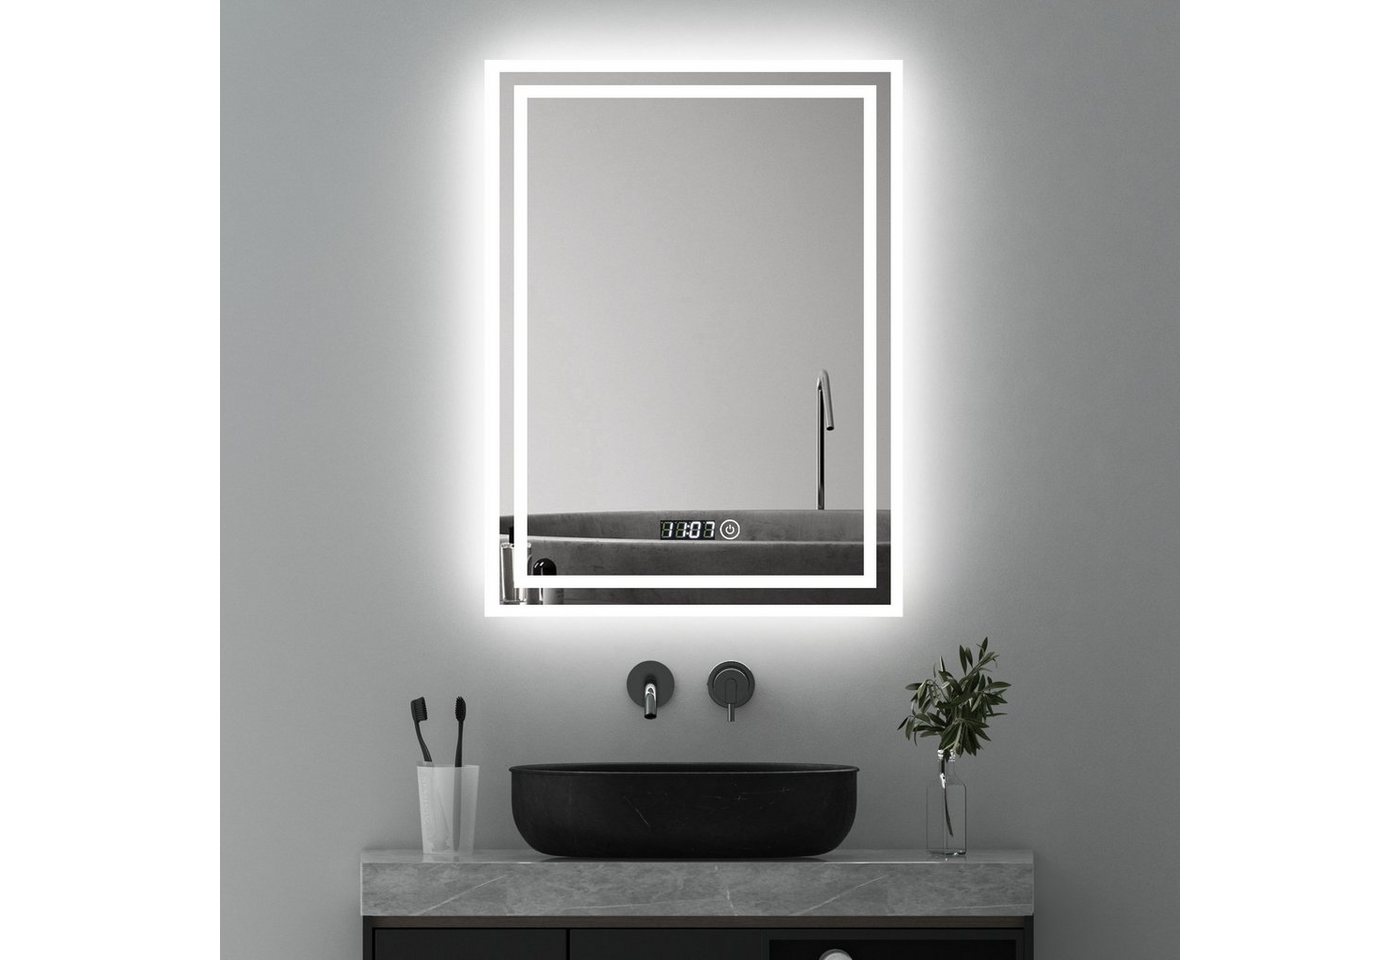 WDWRITTI Badspiegel Led 50x70 80x60 100x60 Touch Uhr dimmbar Spiegel Bad mit beleuchtung (Badezimmerspiegel Wandspiegel, Speicherfunktion, Helligkeit dimmbar, Wandschalter), Warmweiß, Neutralweiß, Kaltweiß, Energiesparend von WDWRITTI